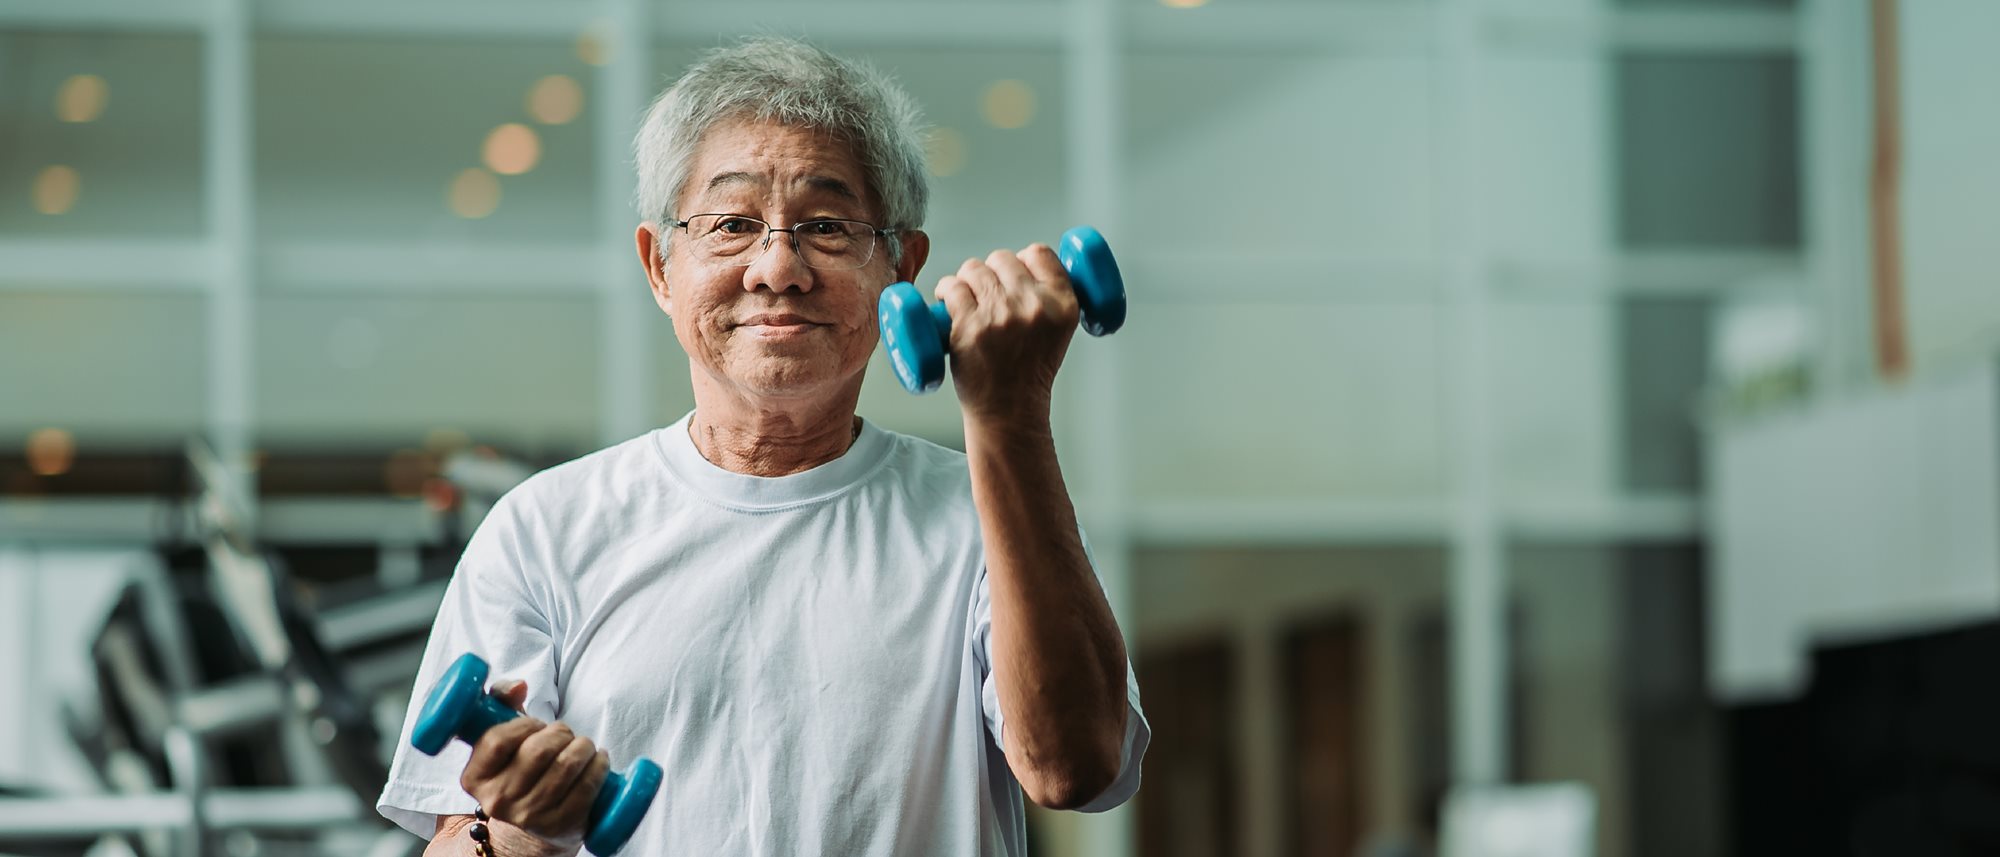 Senior man holding hand weights in gym